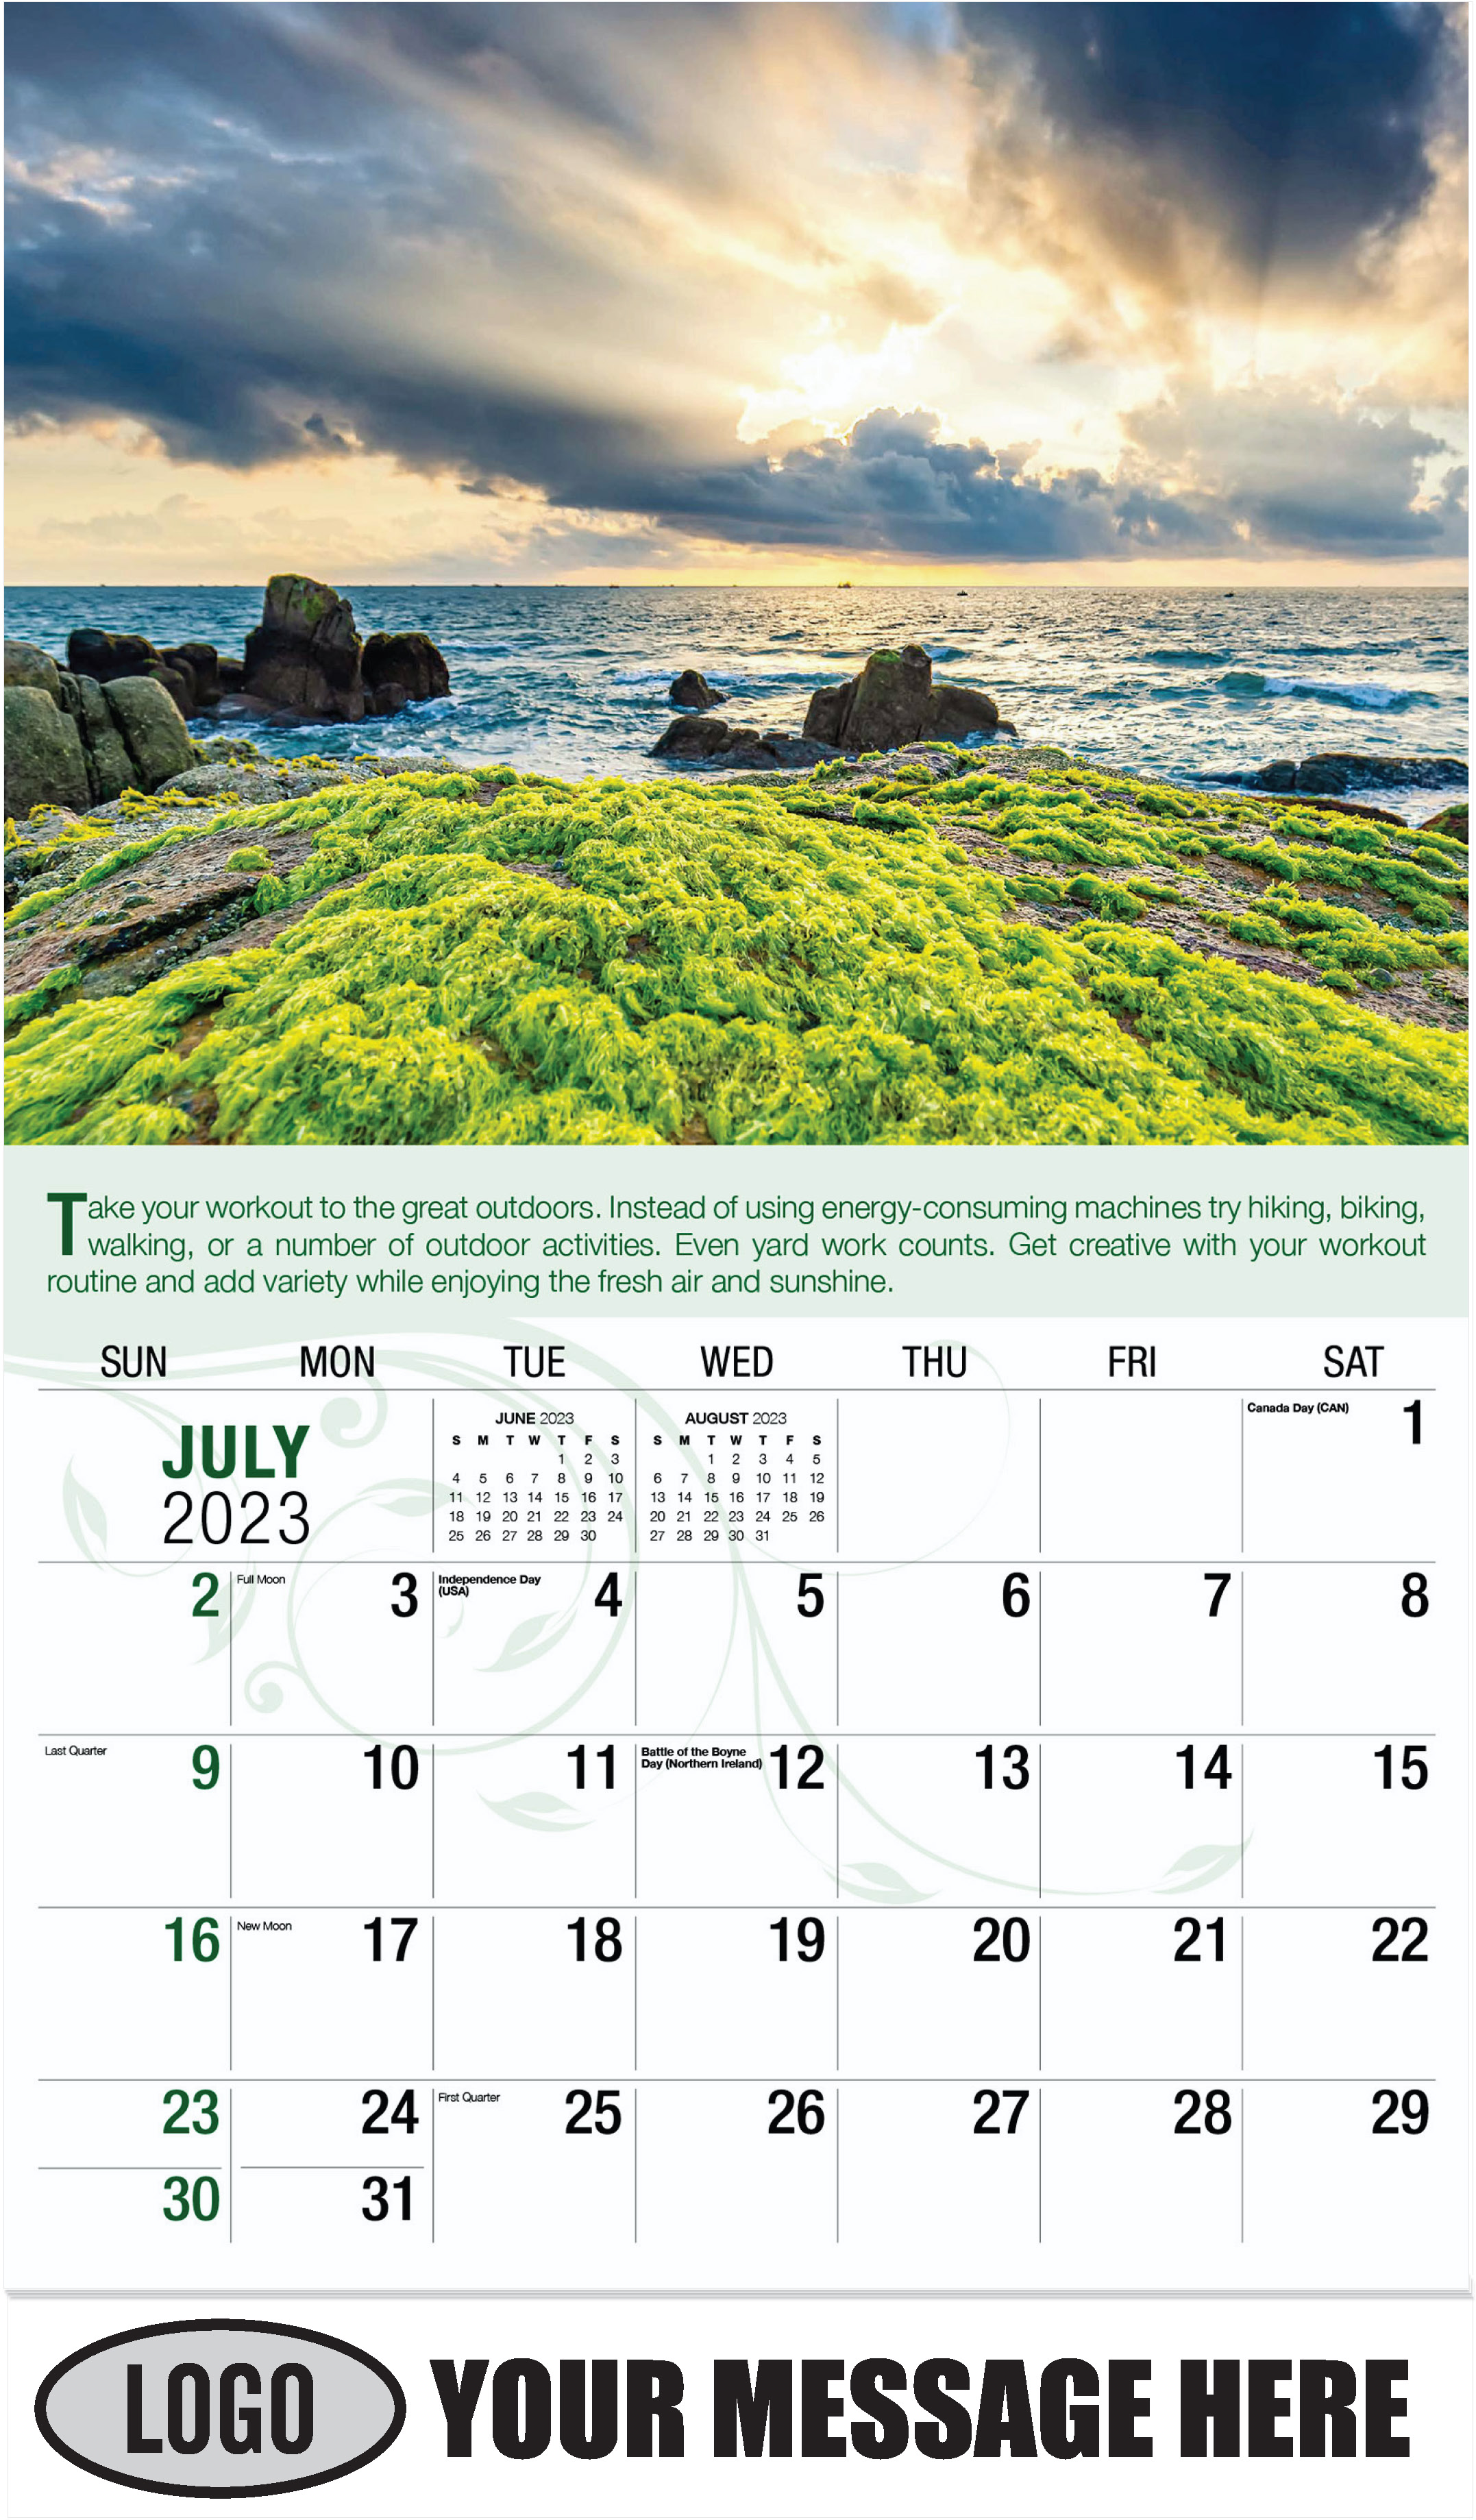 Green Algae on Rocks - July - Go Green 2023 Promotional Calendar